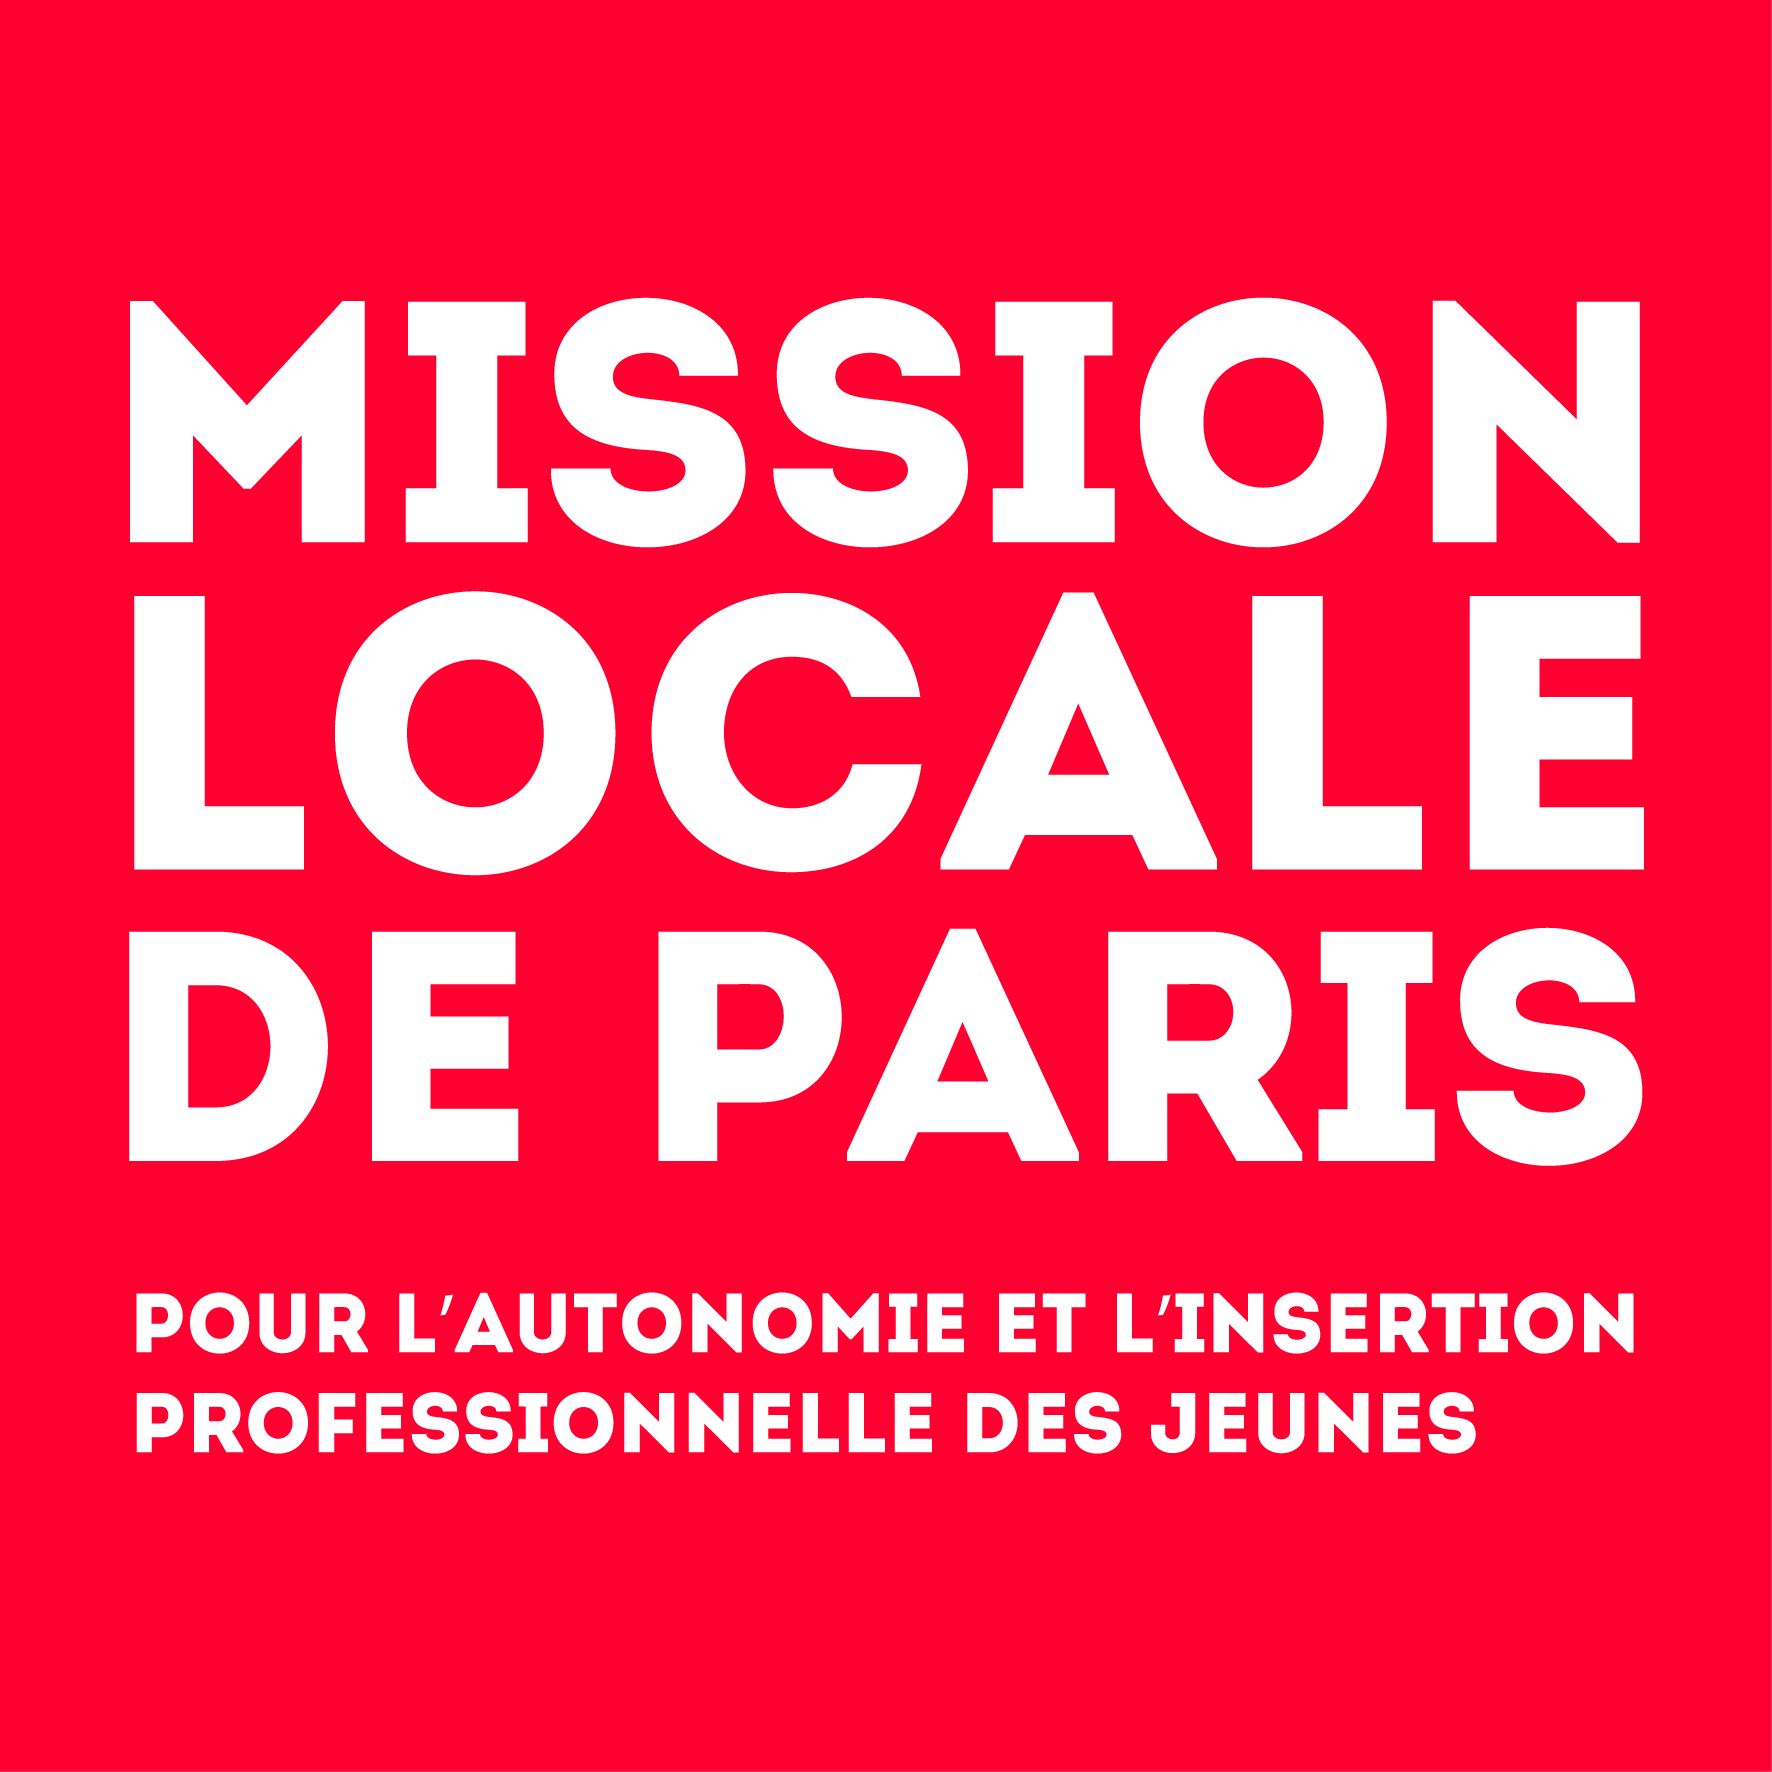 Mission Locale de Paris